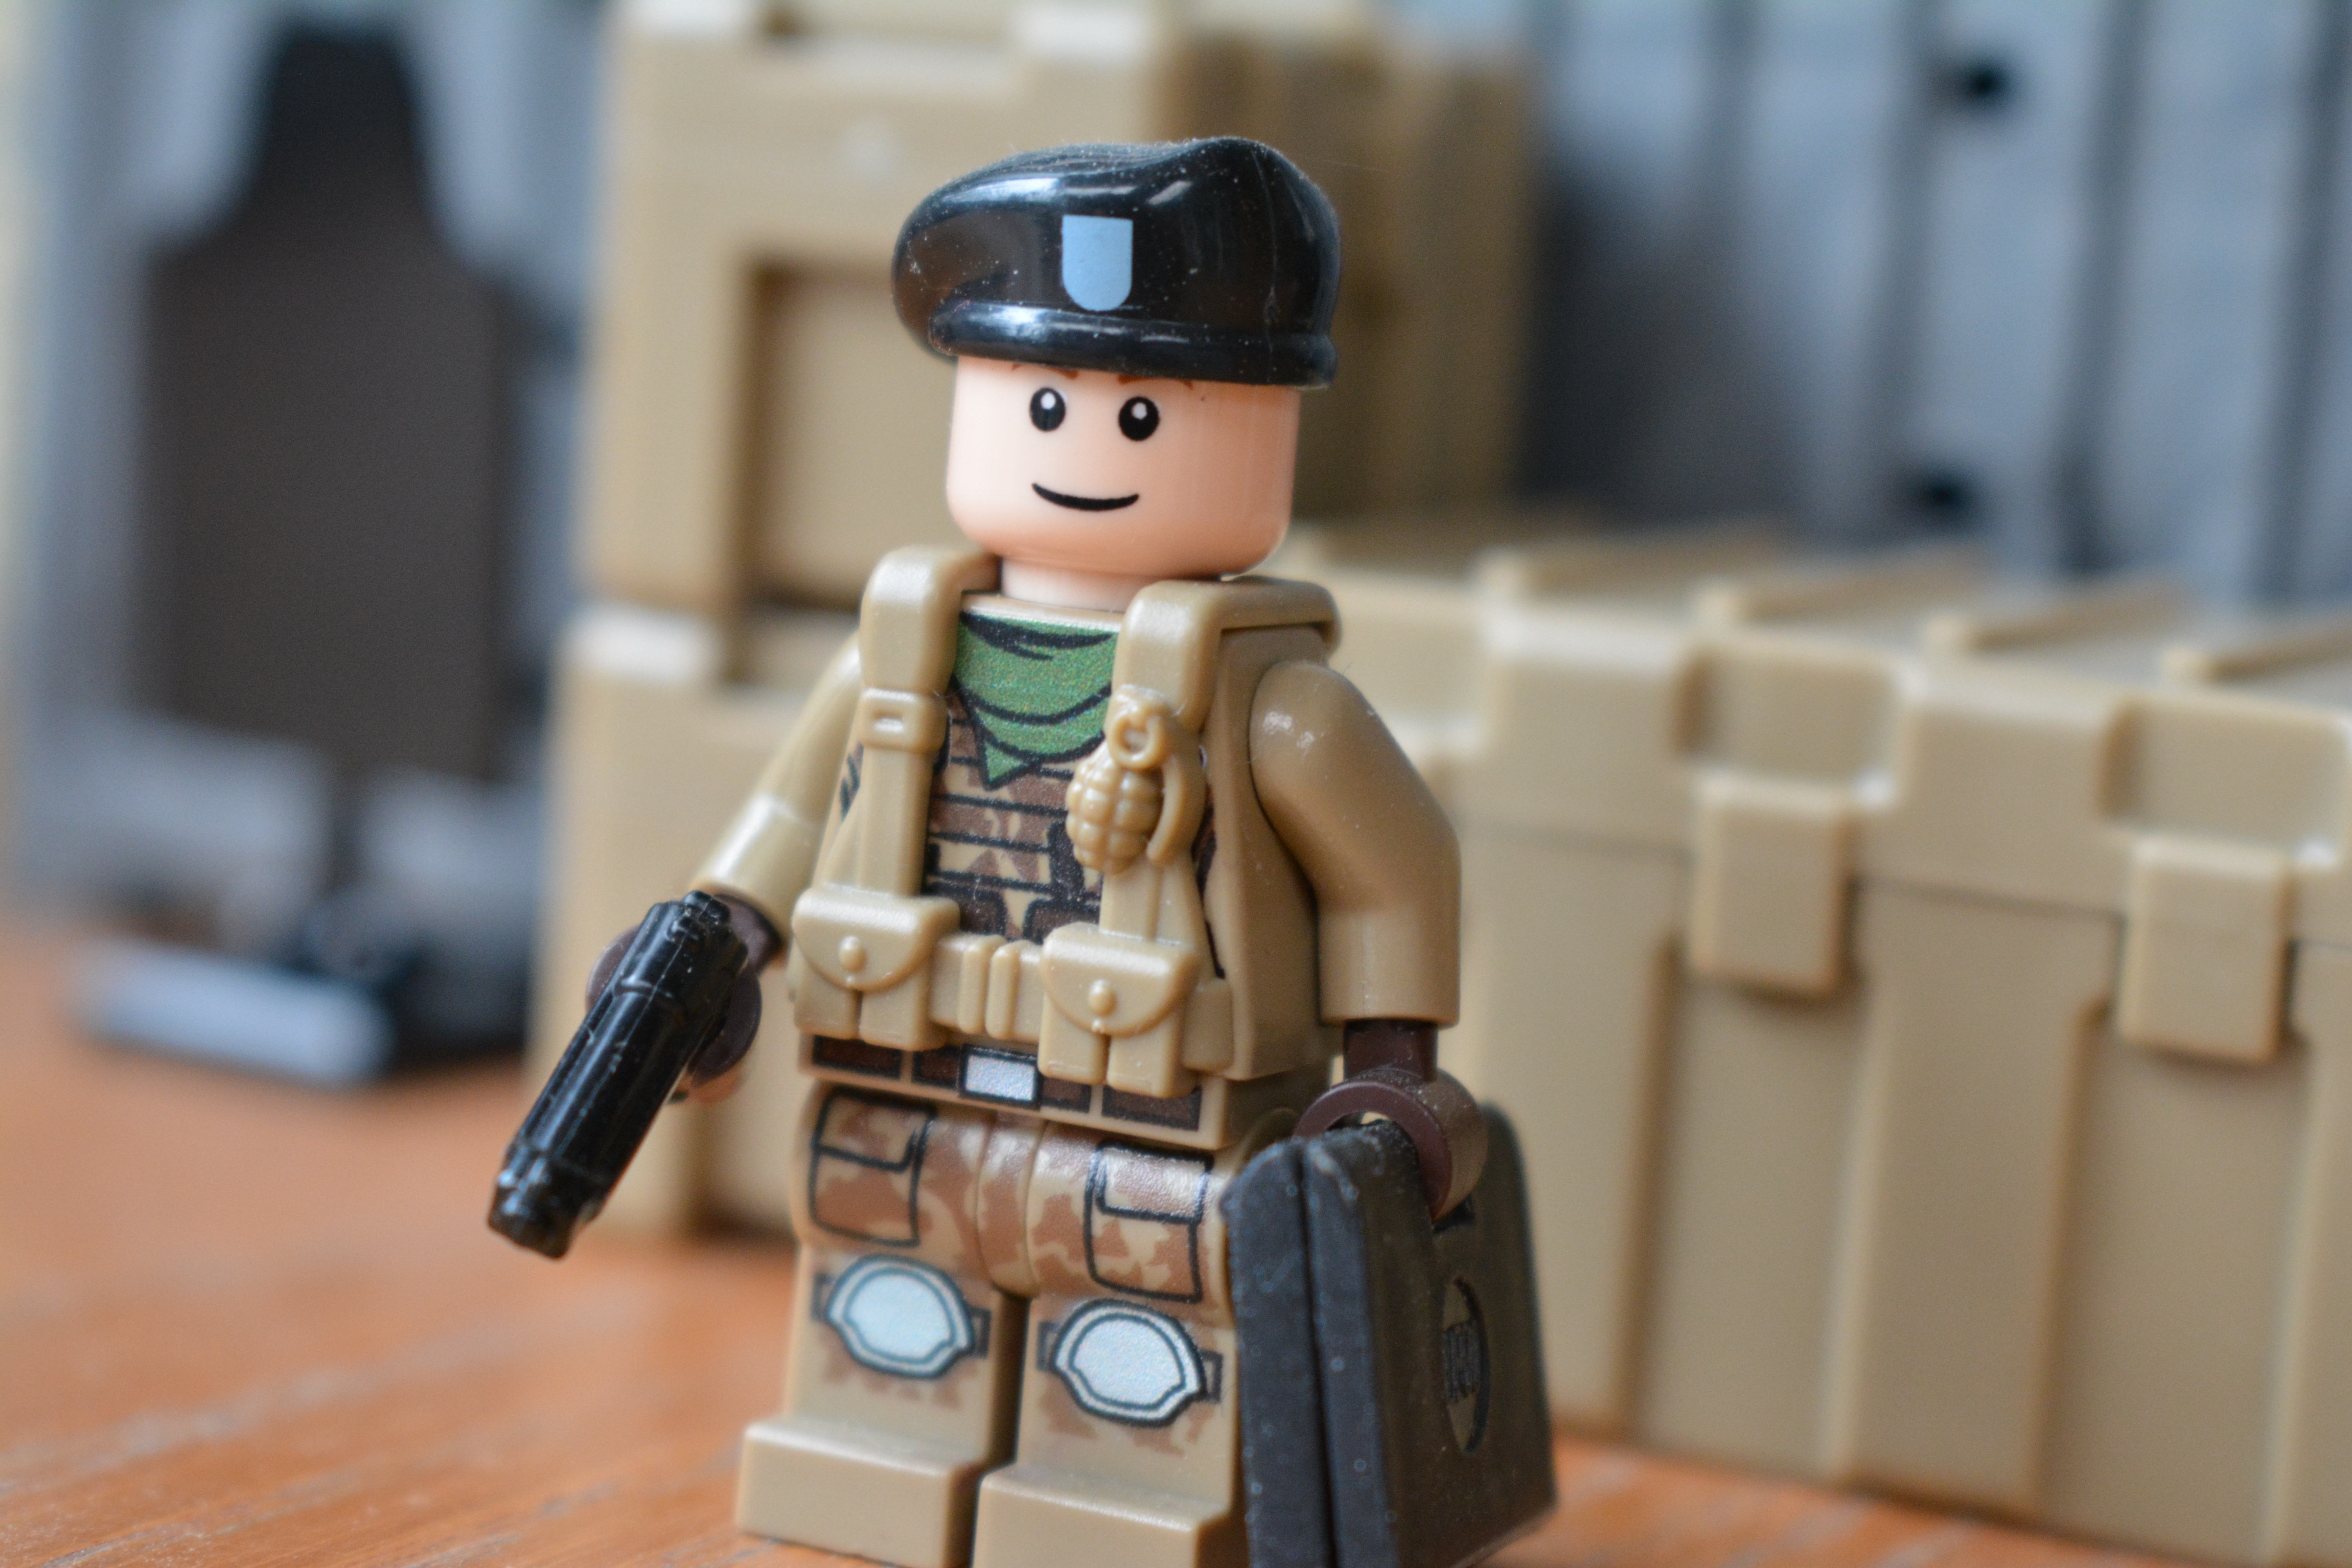 Building Custom LEGO Army Minifigures - Minifigures.com Blog